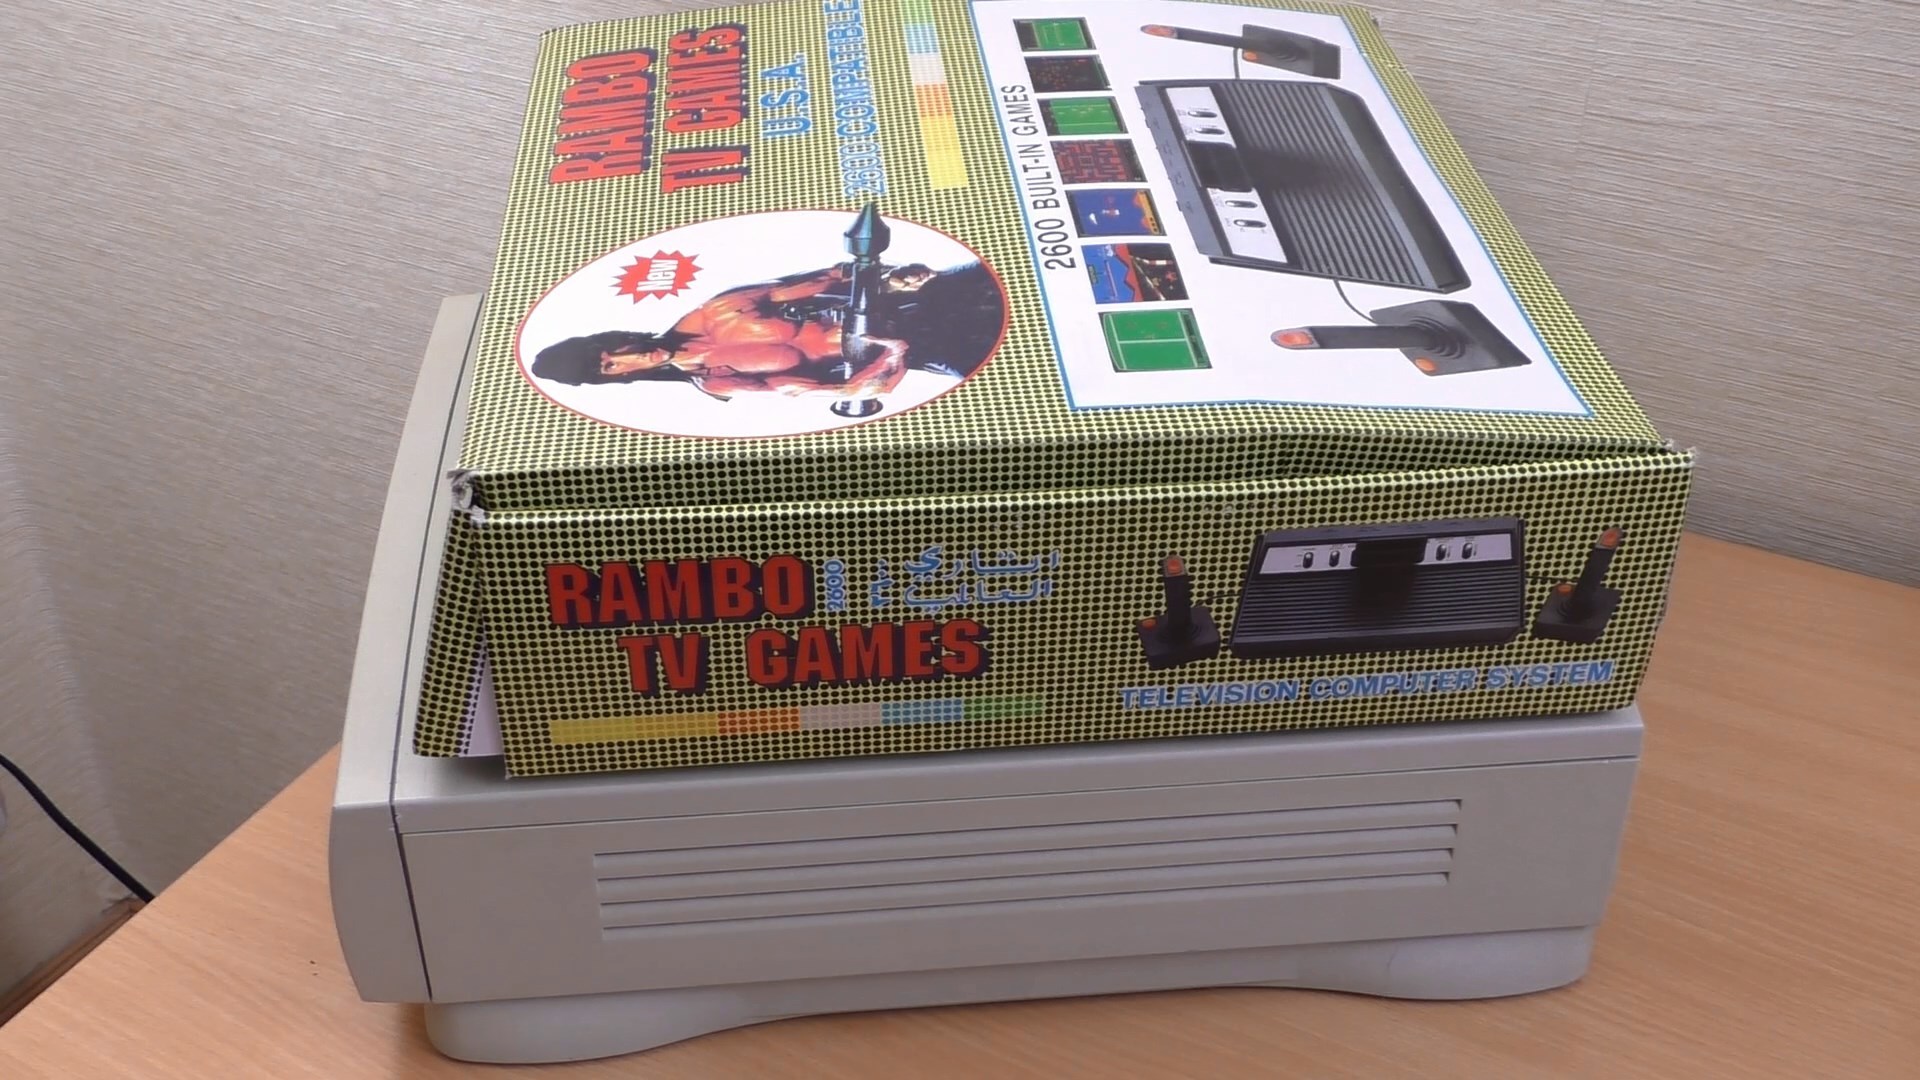 Rambo TV Games (Atari 2600) [статья с кучей фото и капелькой видео] - 3